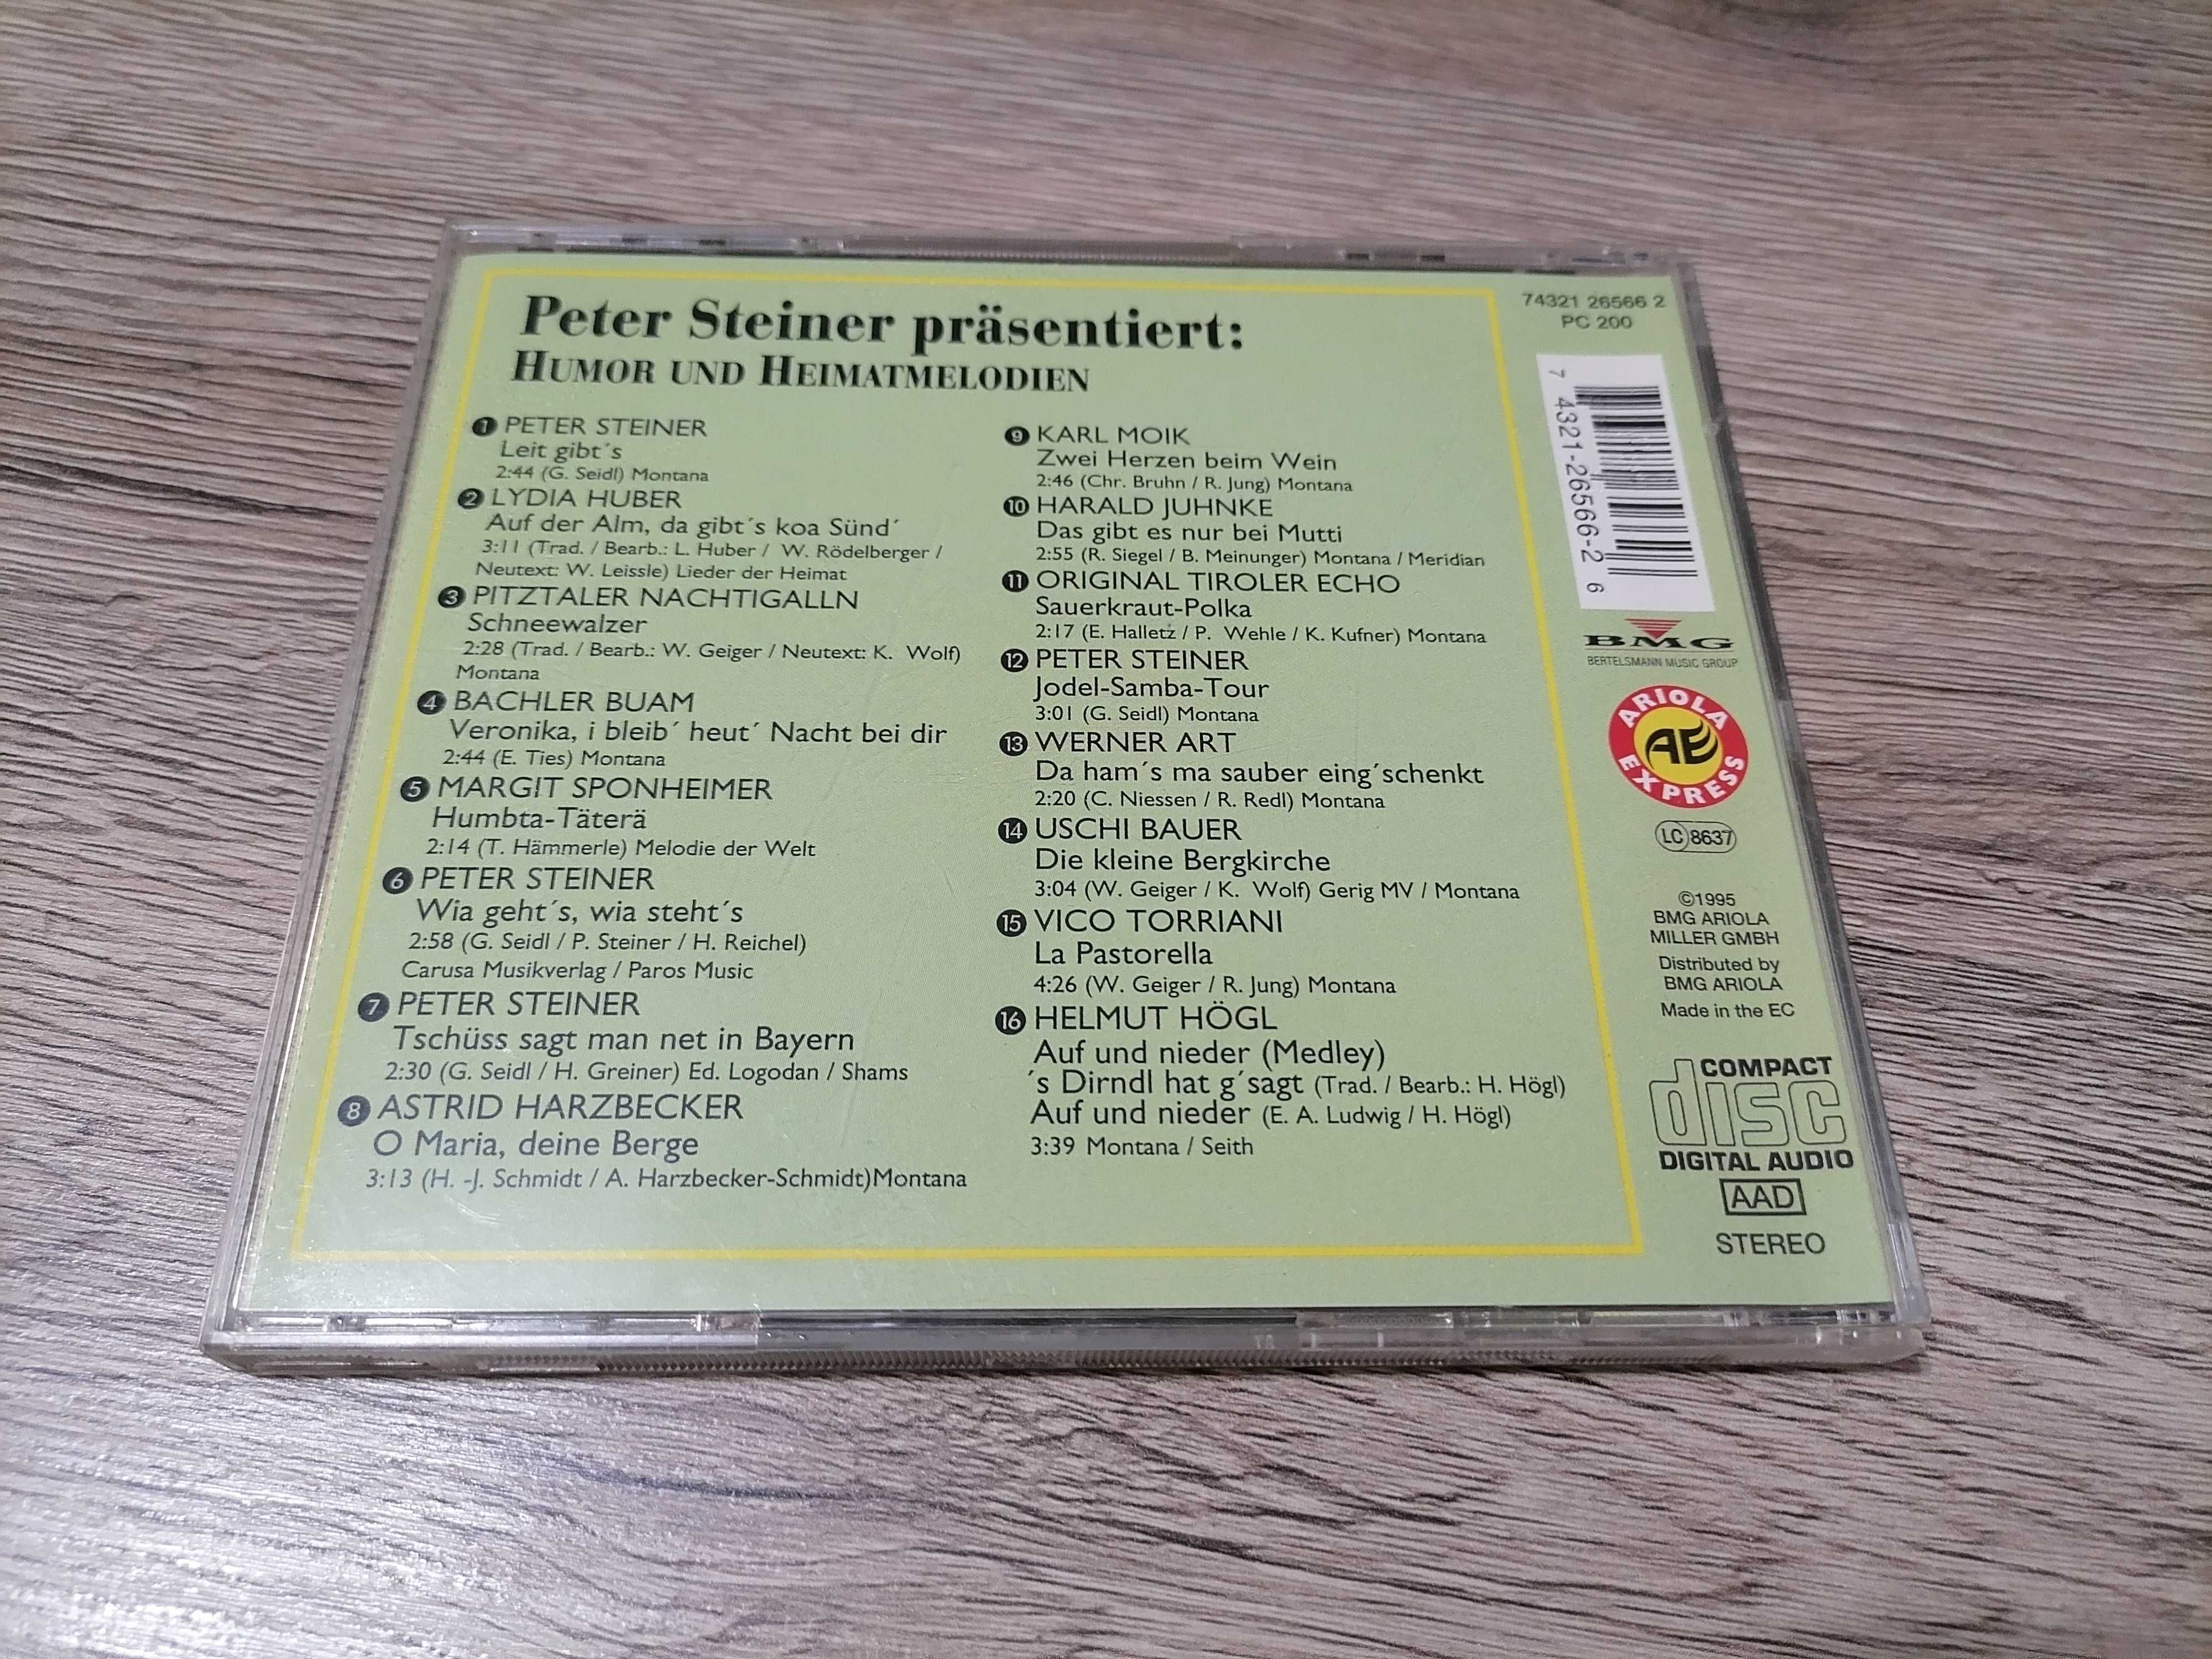 Peter Steiner prasentiert - Humor und Meimatmelodien CD